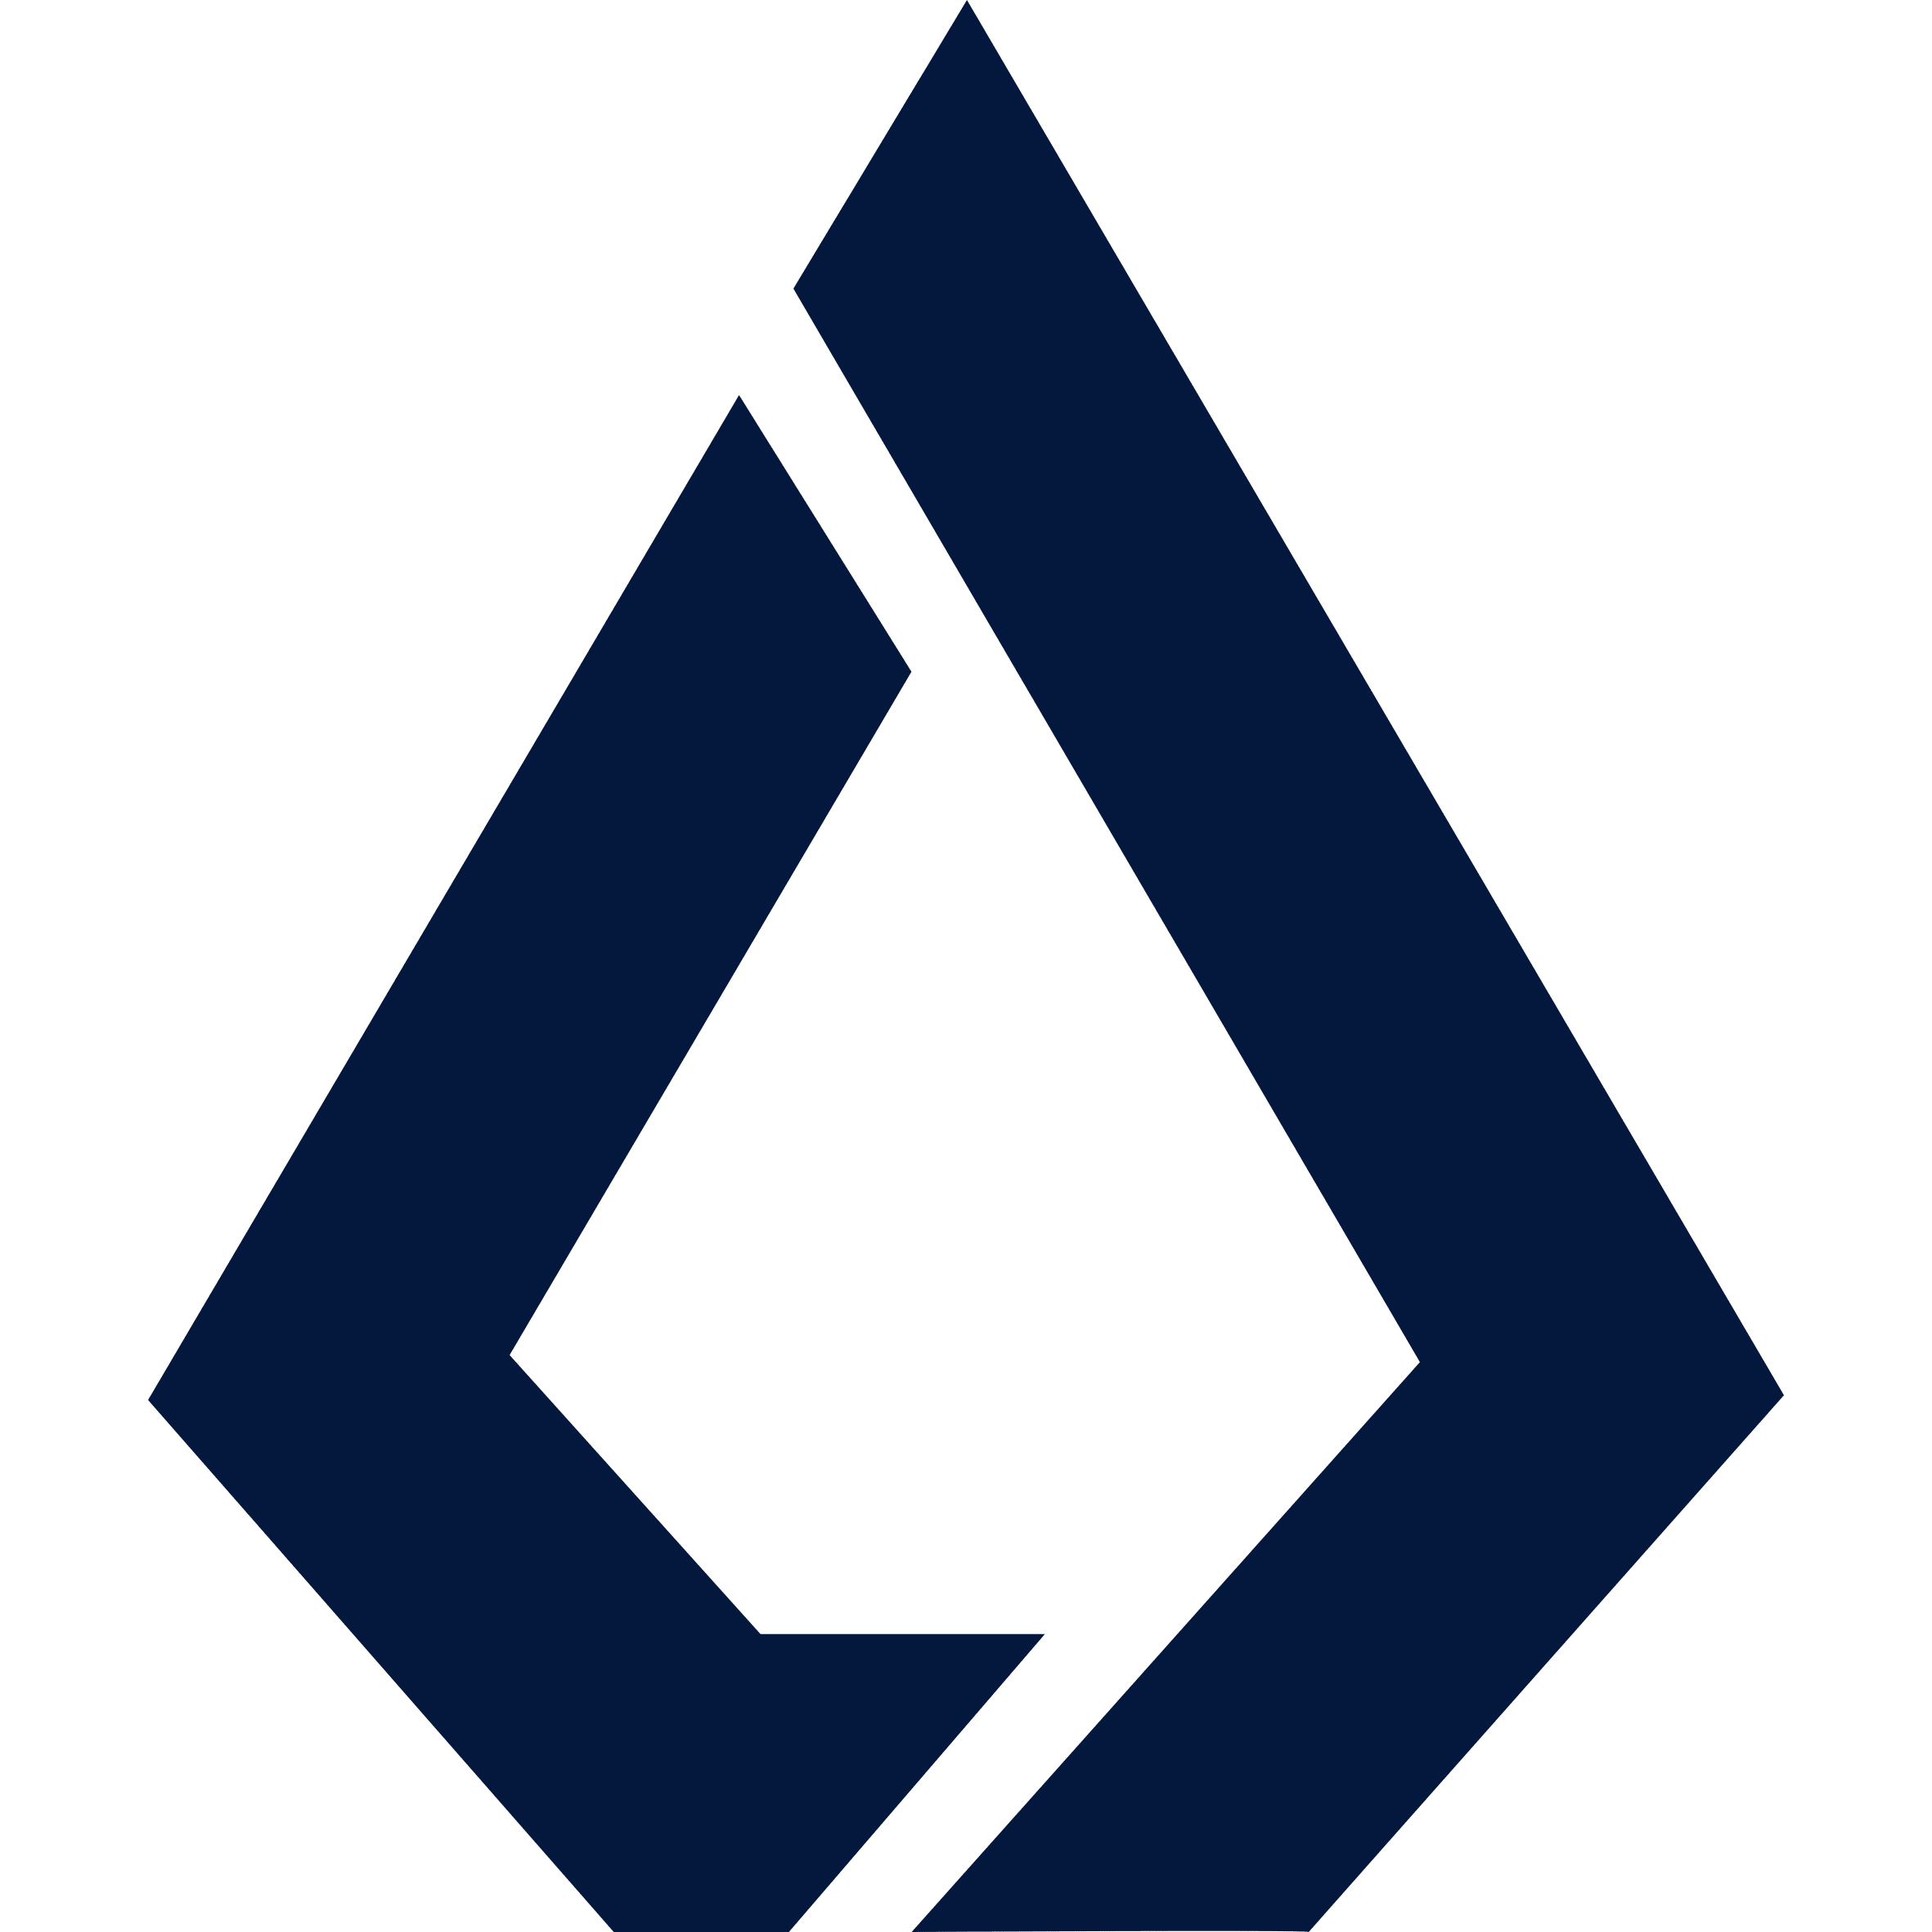 Lisk logo in png format